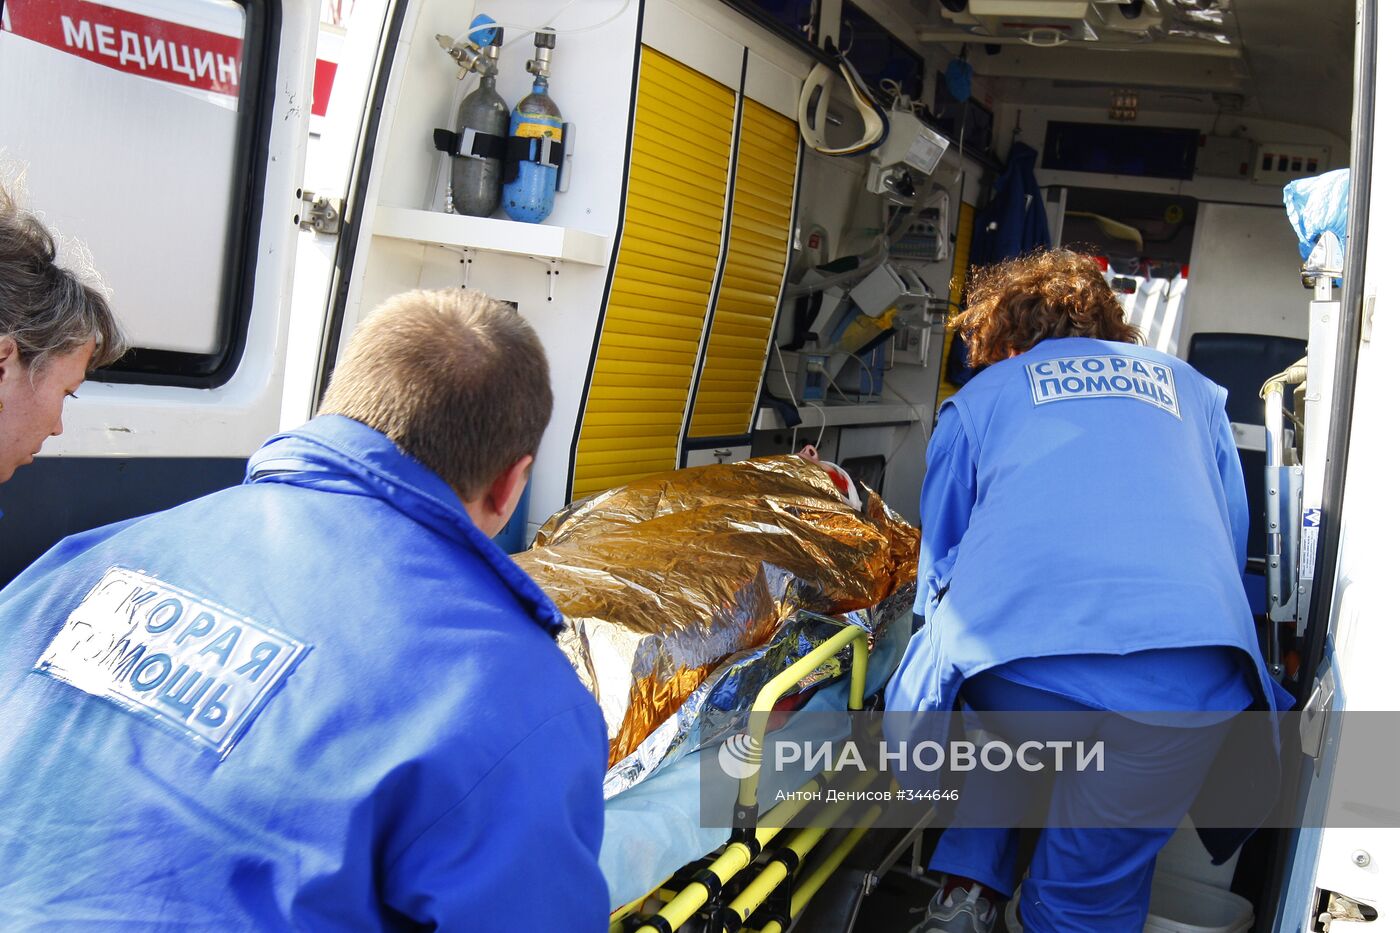 Аварийно-спасательные учения в аэропорту "Шереметьево"